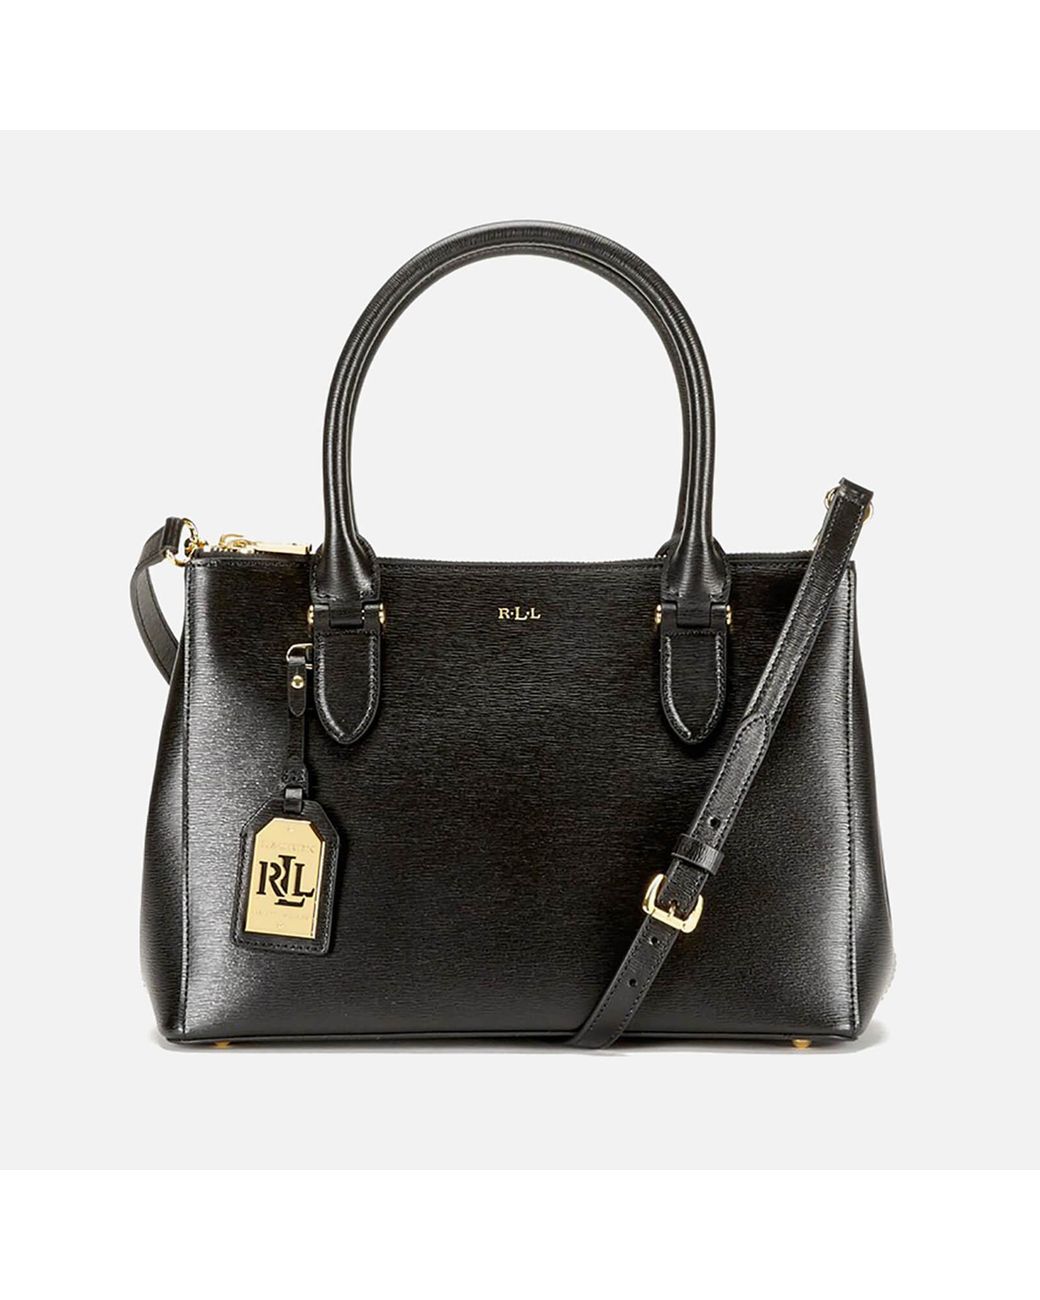 Lauren by Ralph Lauren Newbury Double Zipper Shopper Bag in Black | Lyst  Australia